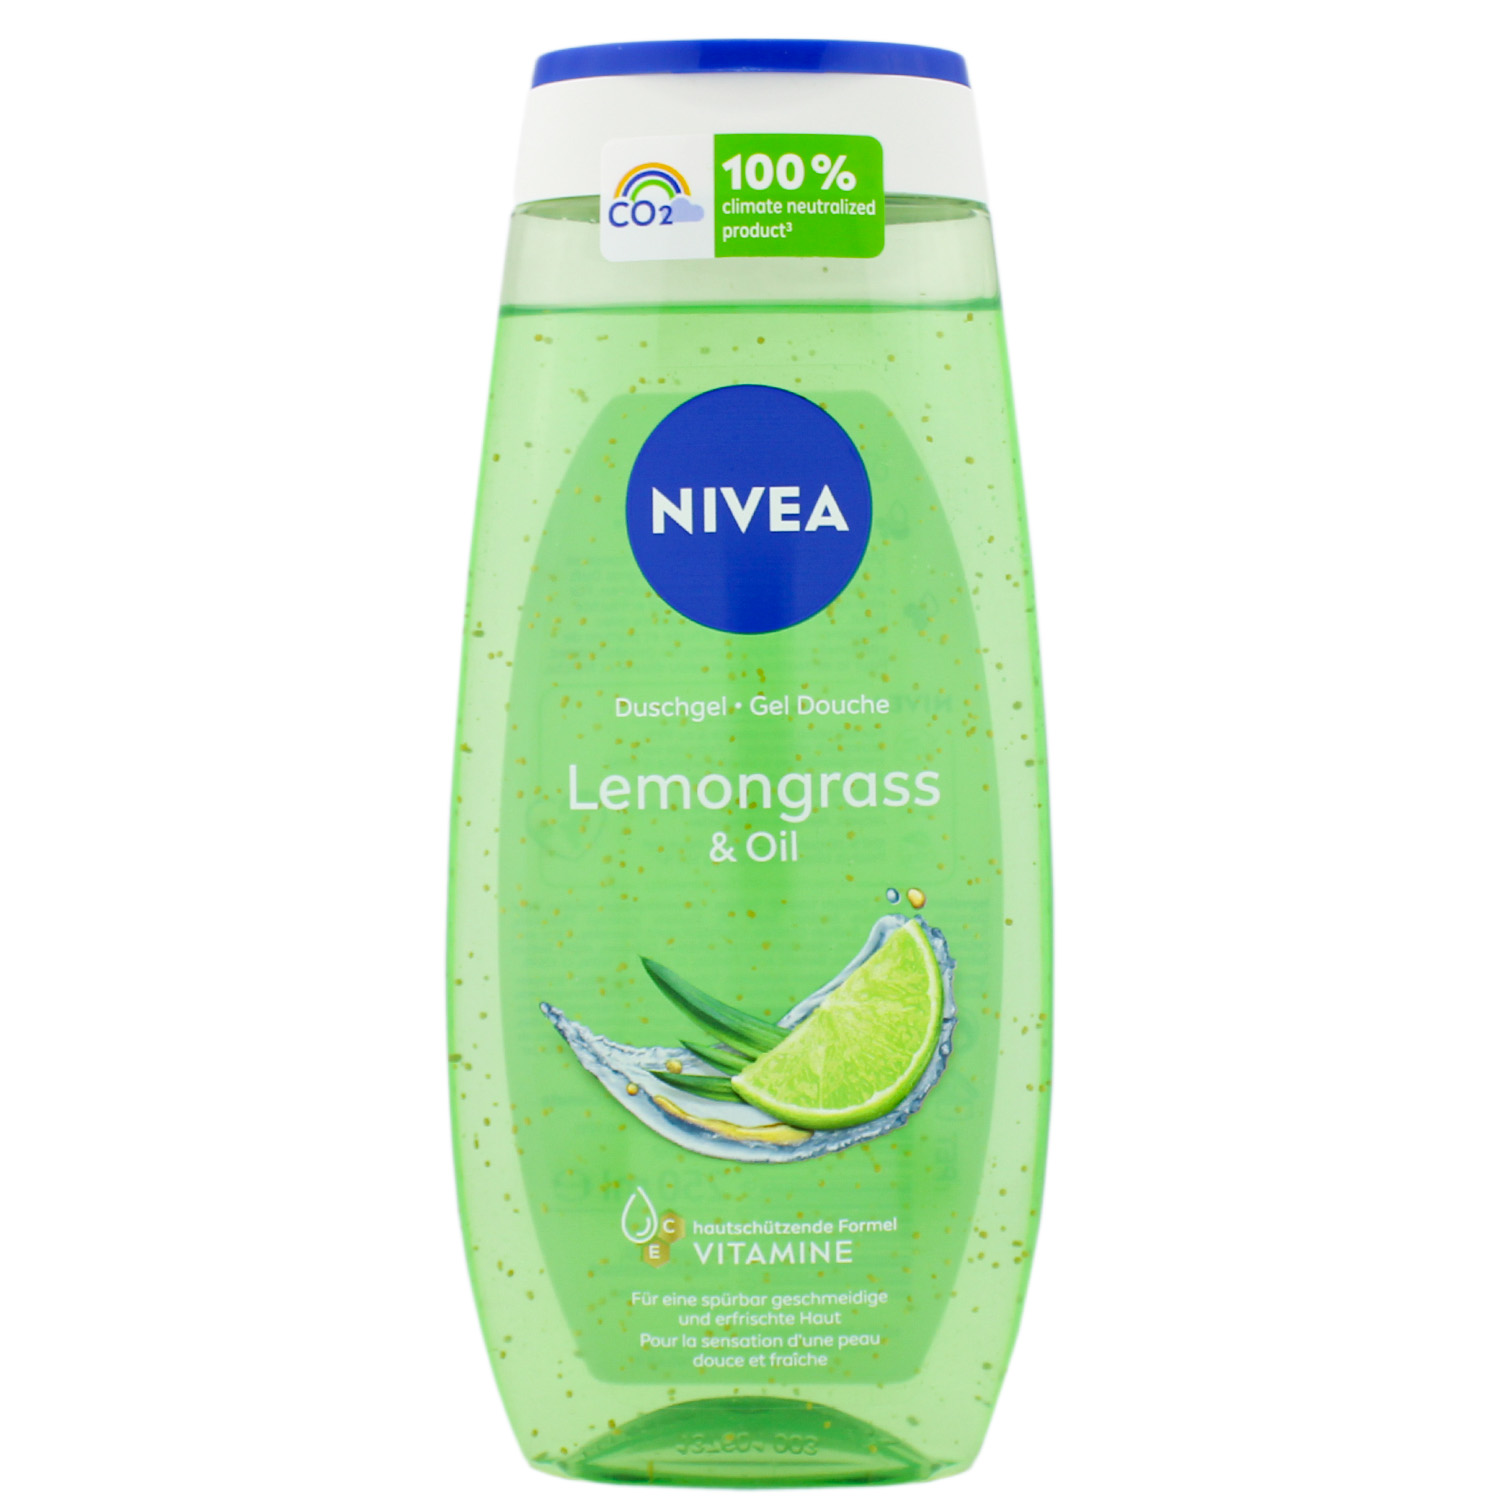 Nivea Lemongrass & Oil Duschgel 250ml